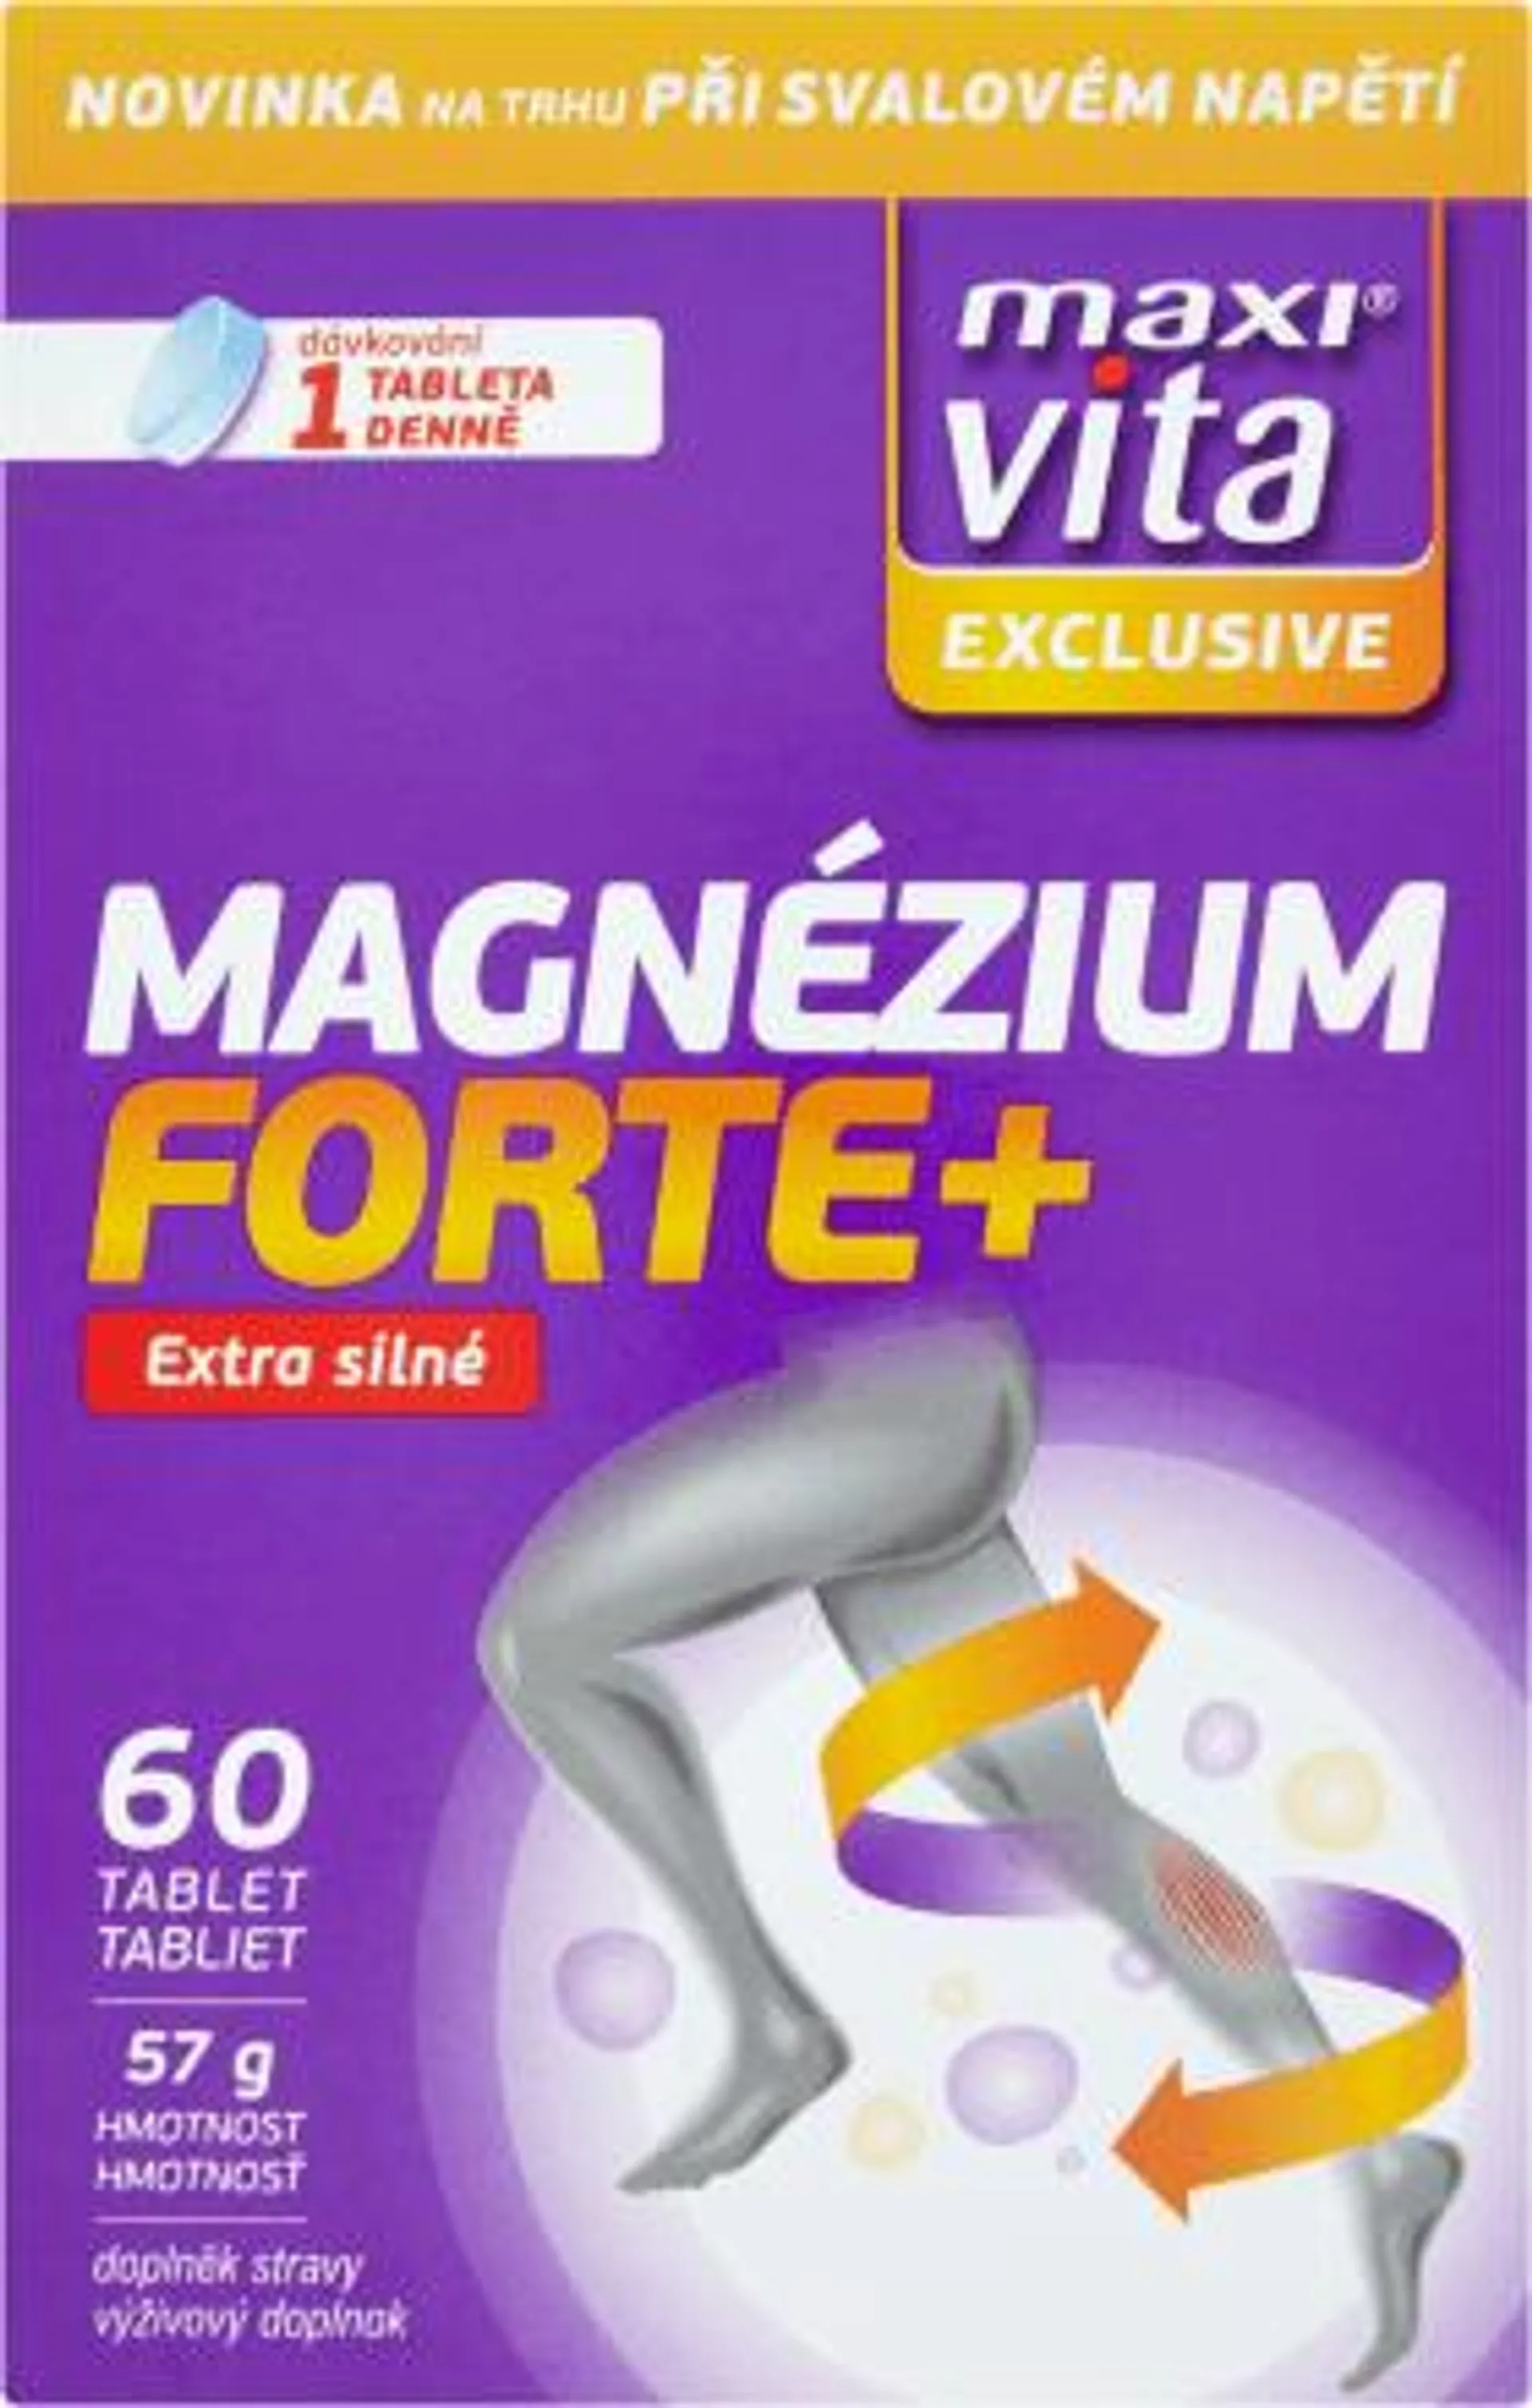 Exclusive Magnézium Forte+, 60 ks